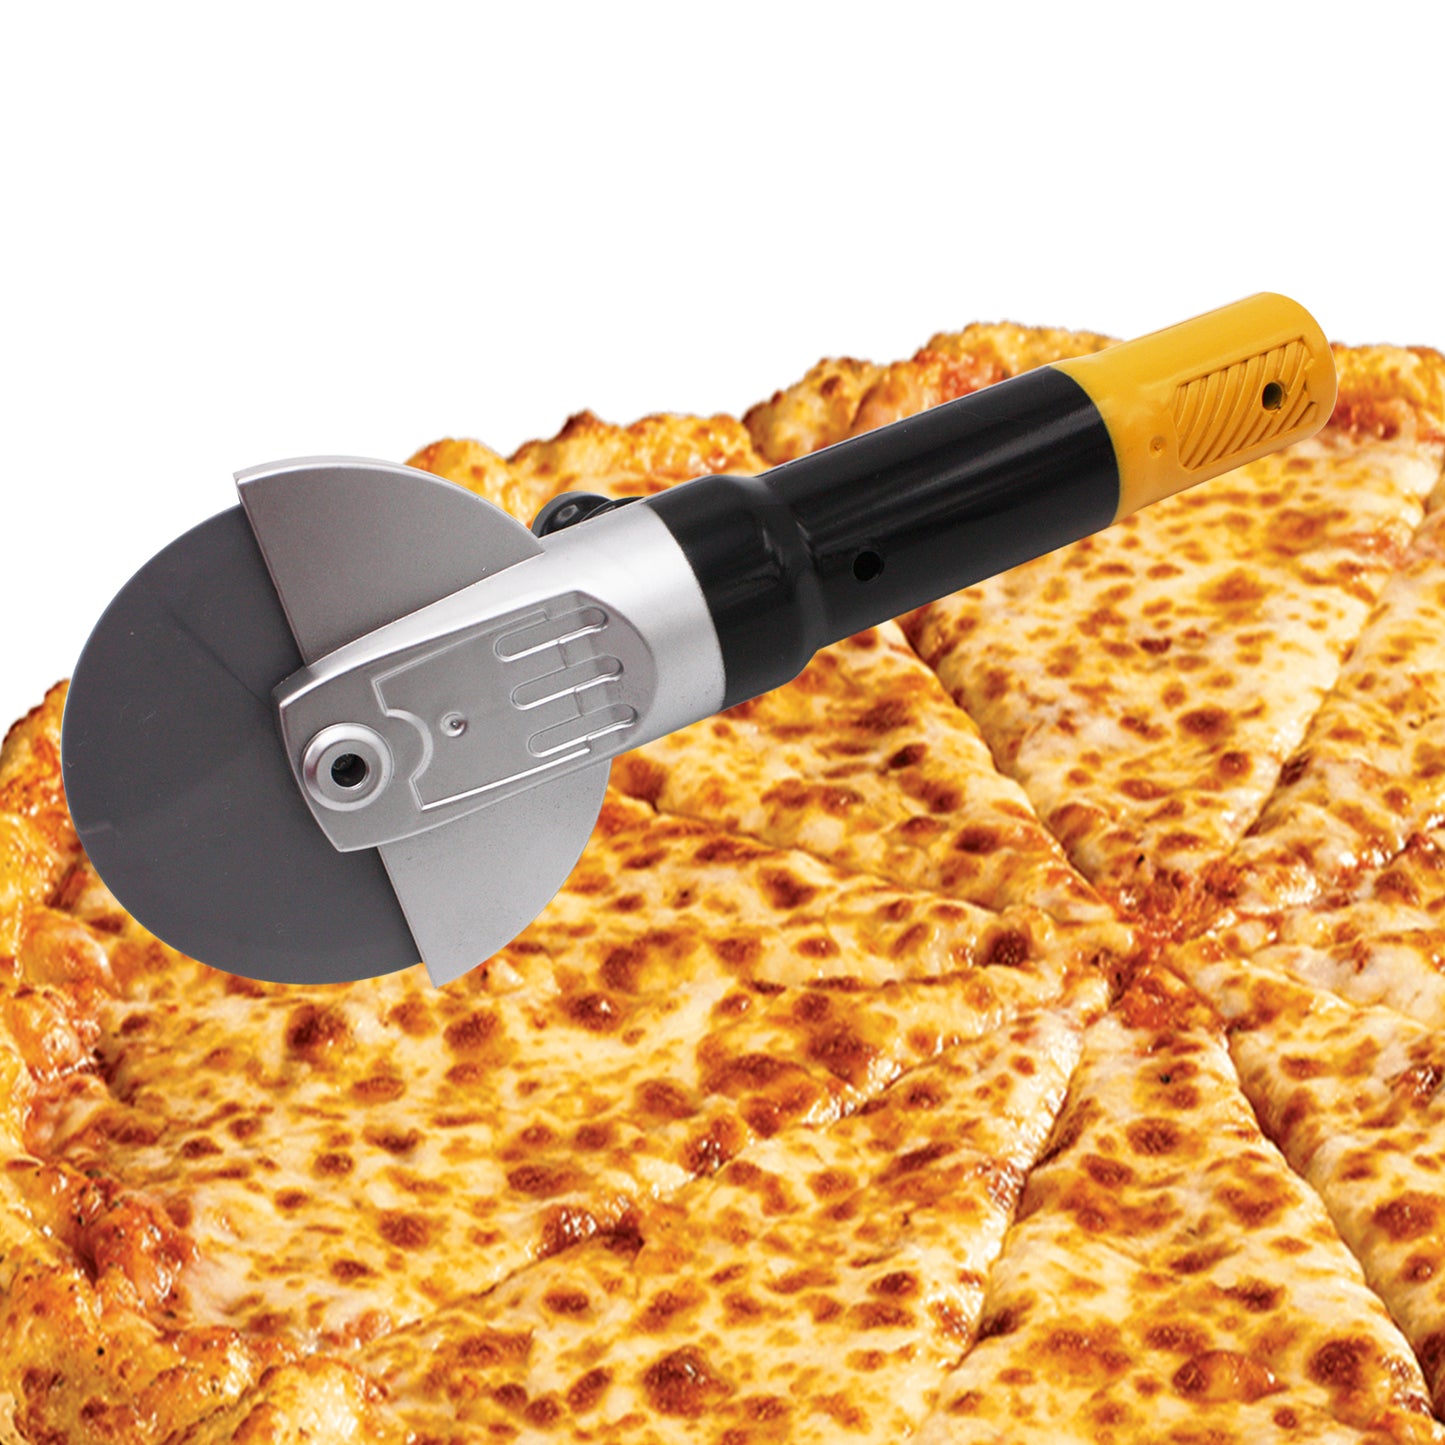 Powertool Pizza Cutter